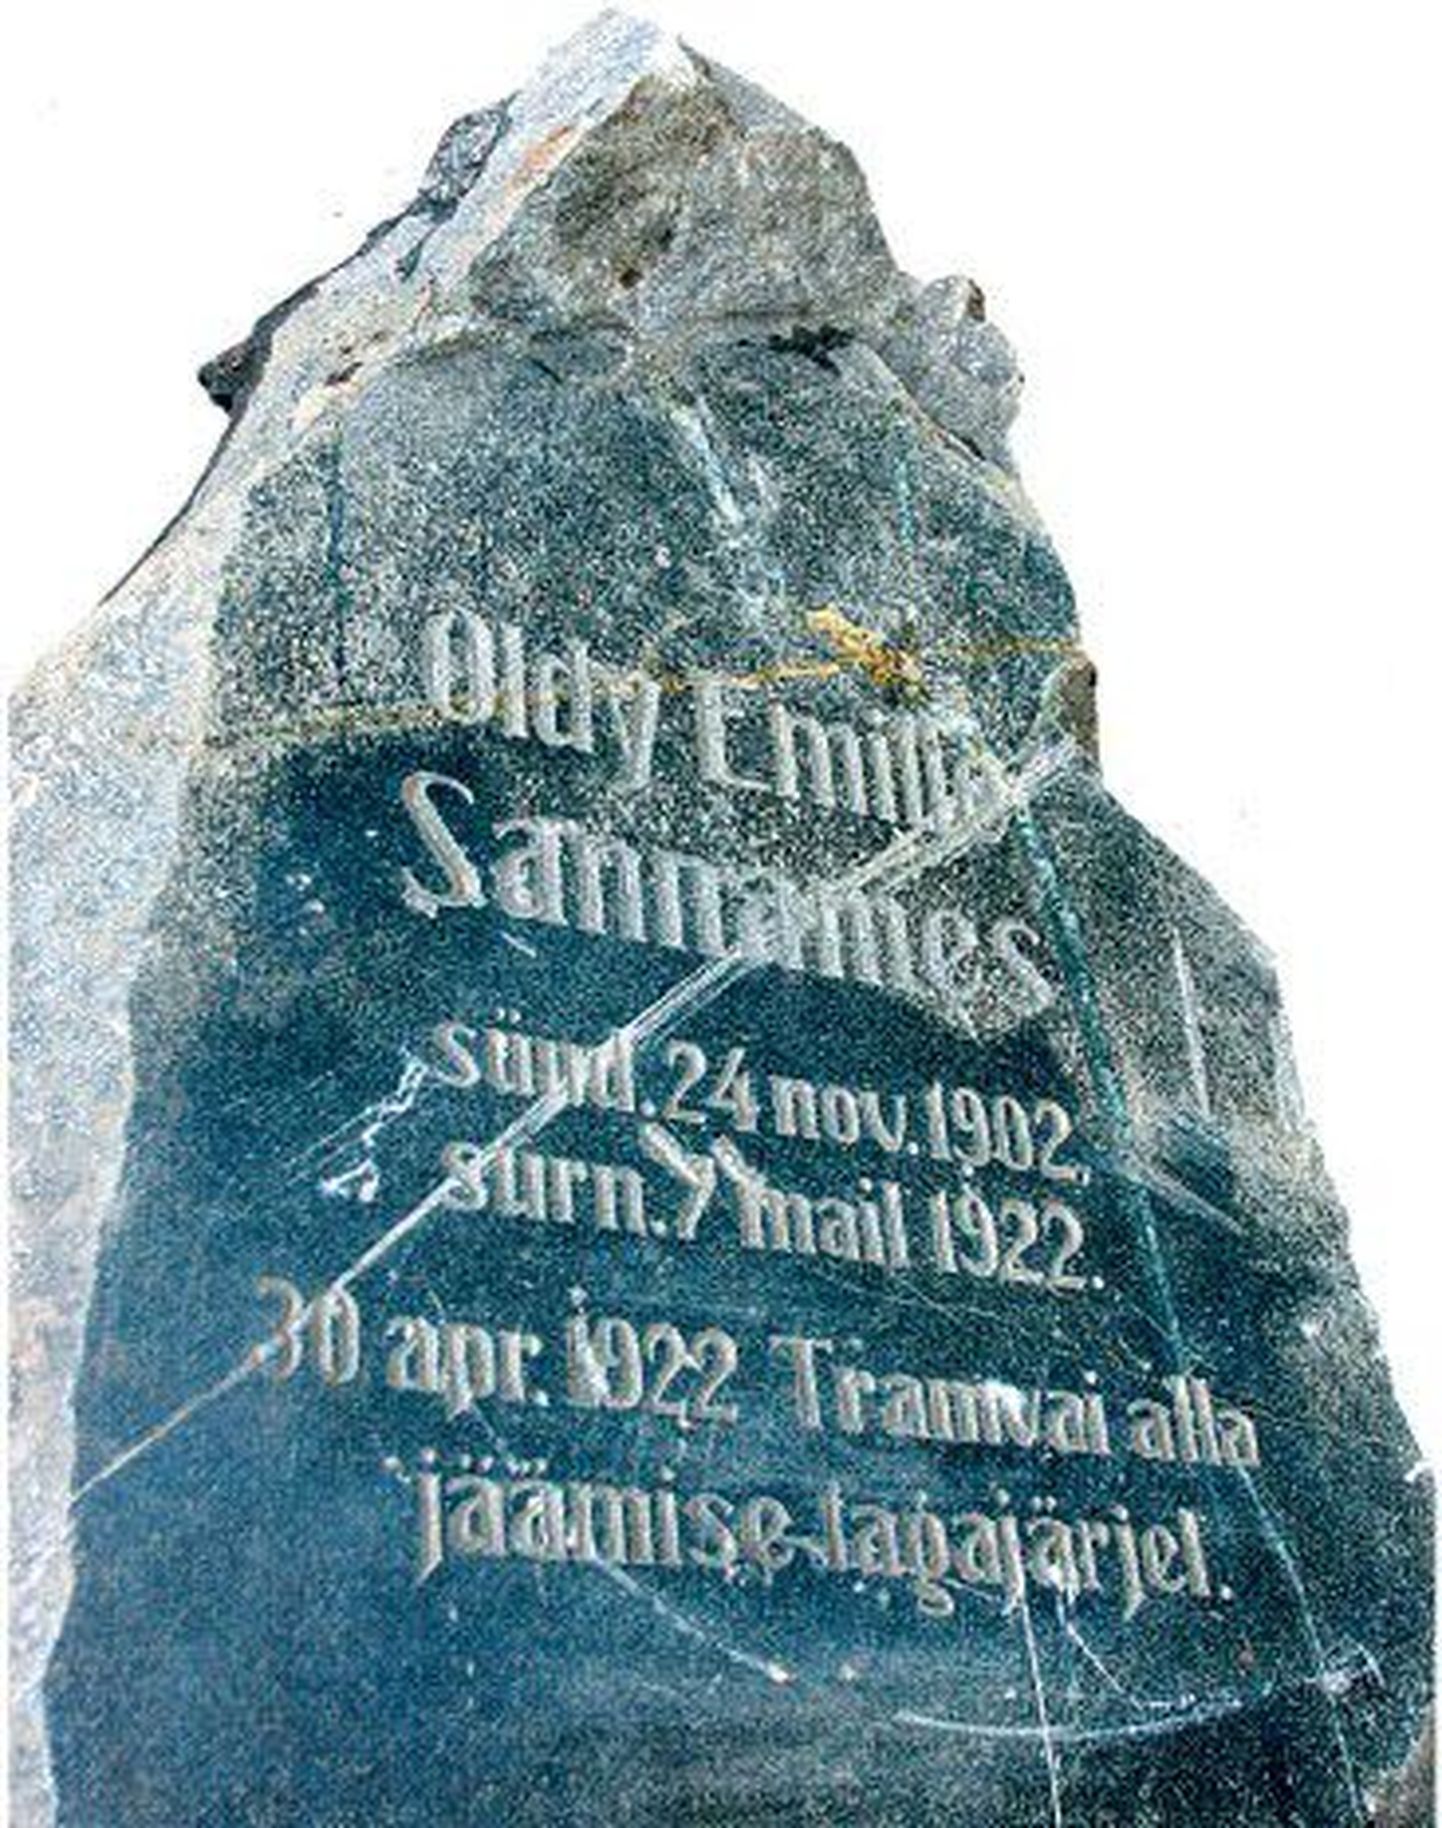 Kalamaja kalmistupargi uuendamisel tuli kaevetööde käigus välja
poolik kivi, mis kunagi tähistas 20-aastaselt «tramvai» alla jäänud
nooruki matmispaika.